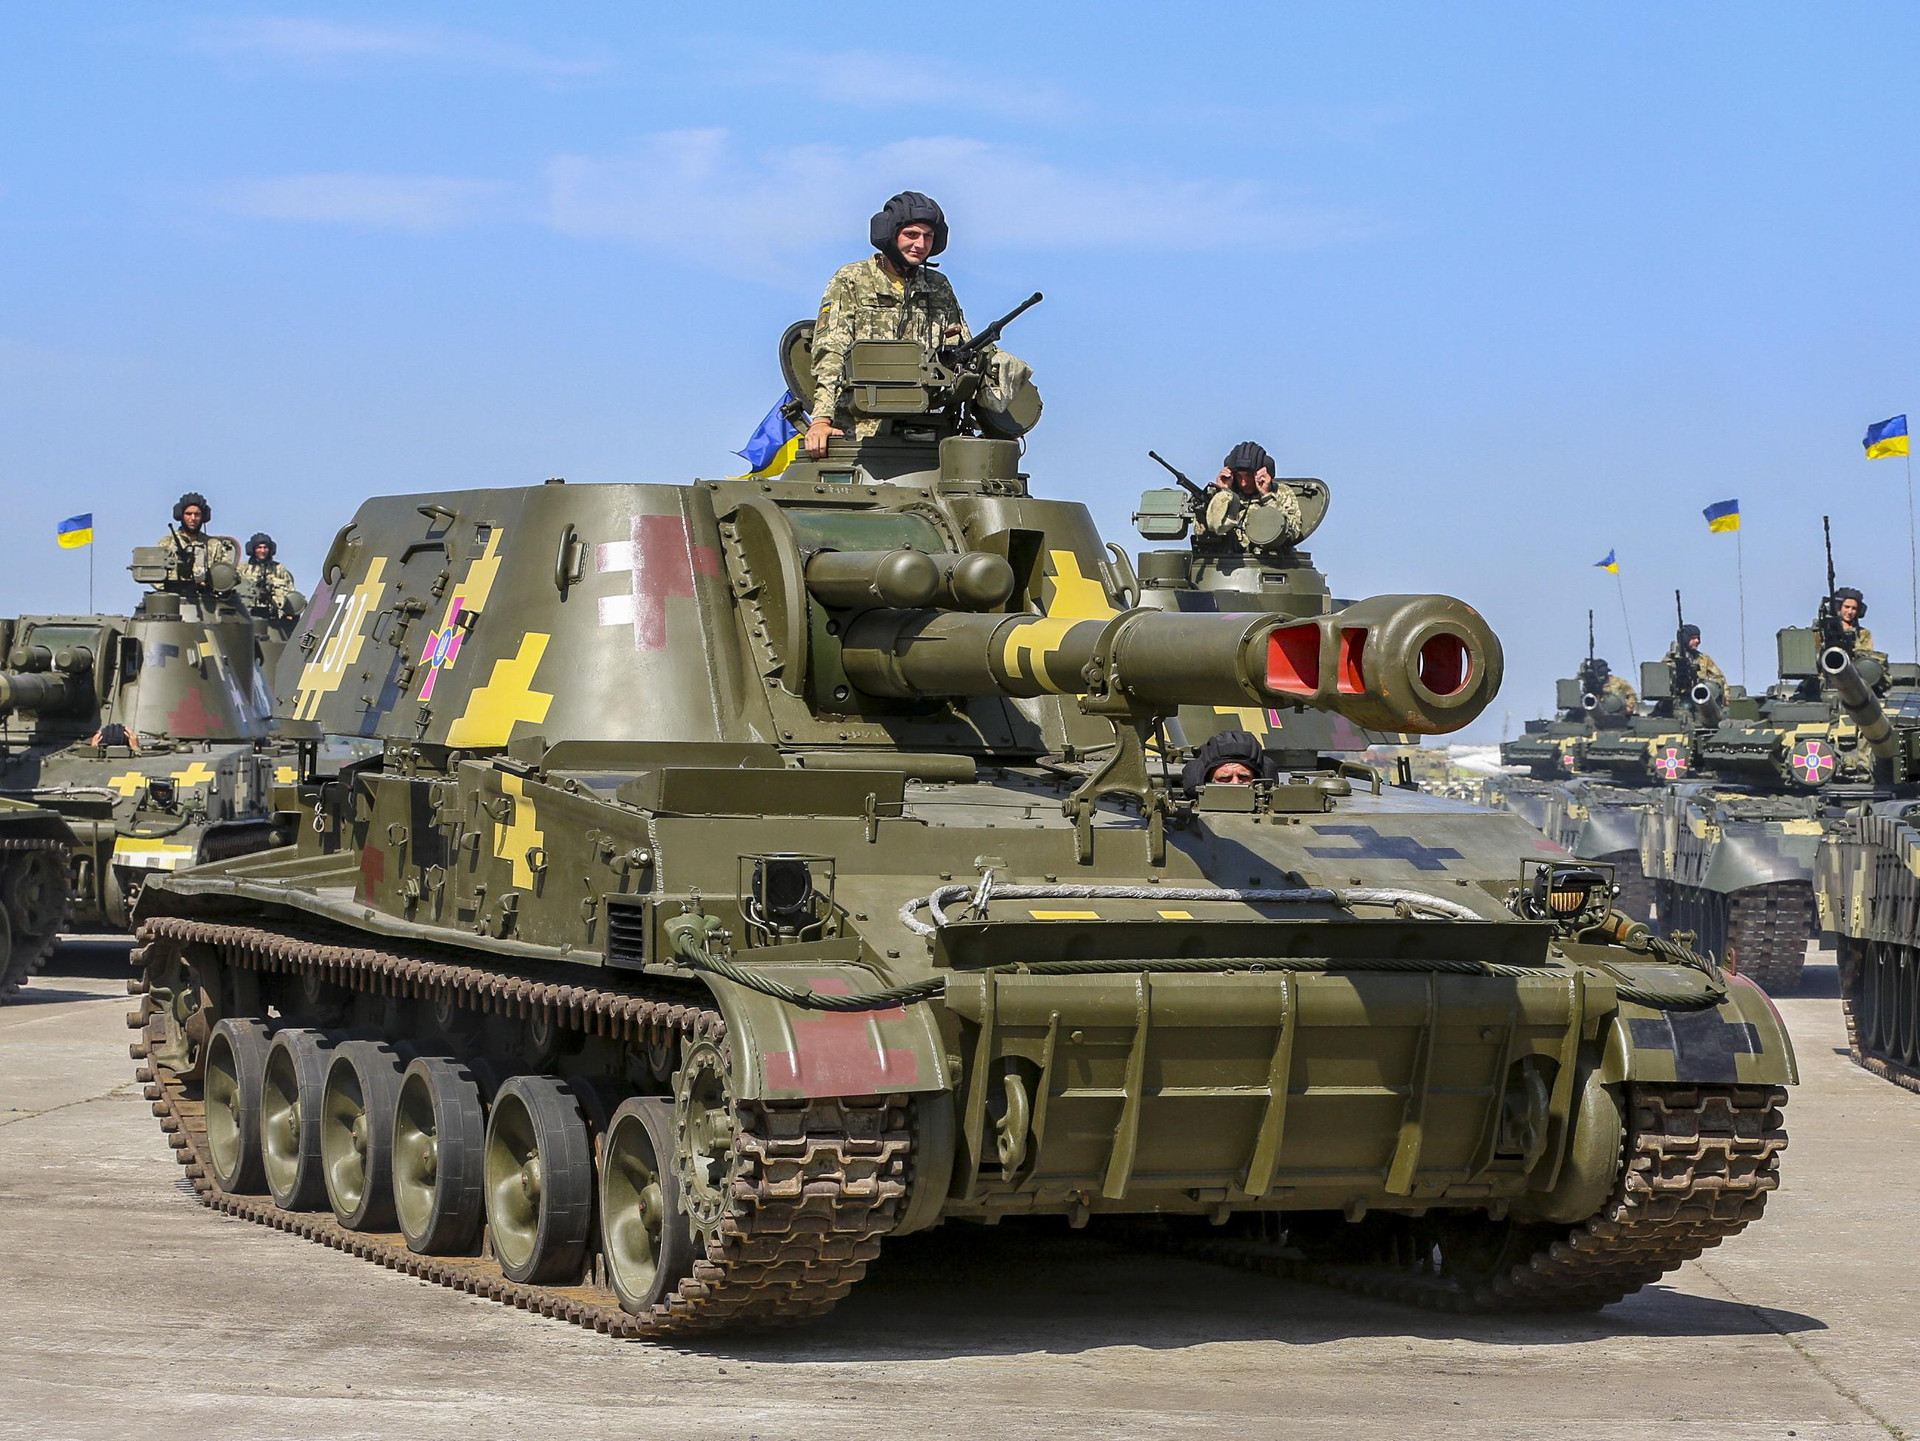 Phương Tây viện trợ ồ ạt, vực dậy pháo binh Ukraine giữa cơn khủng hoảng? - 1